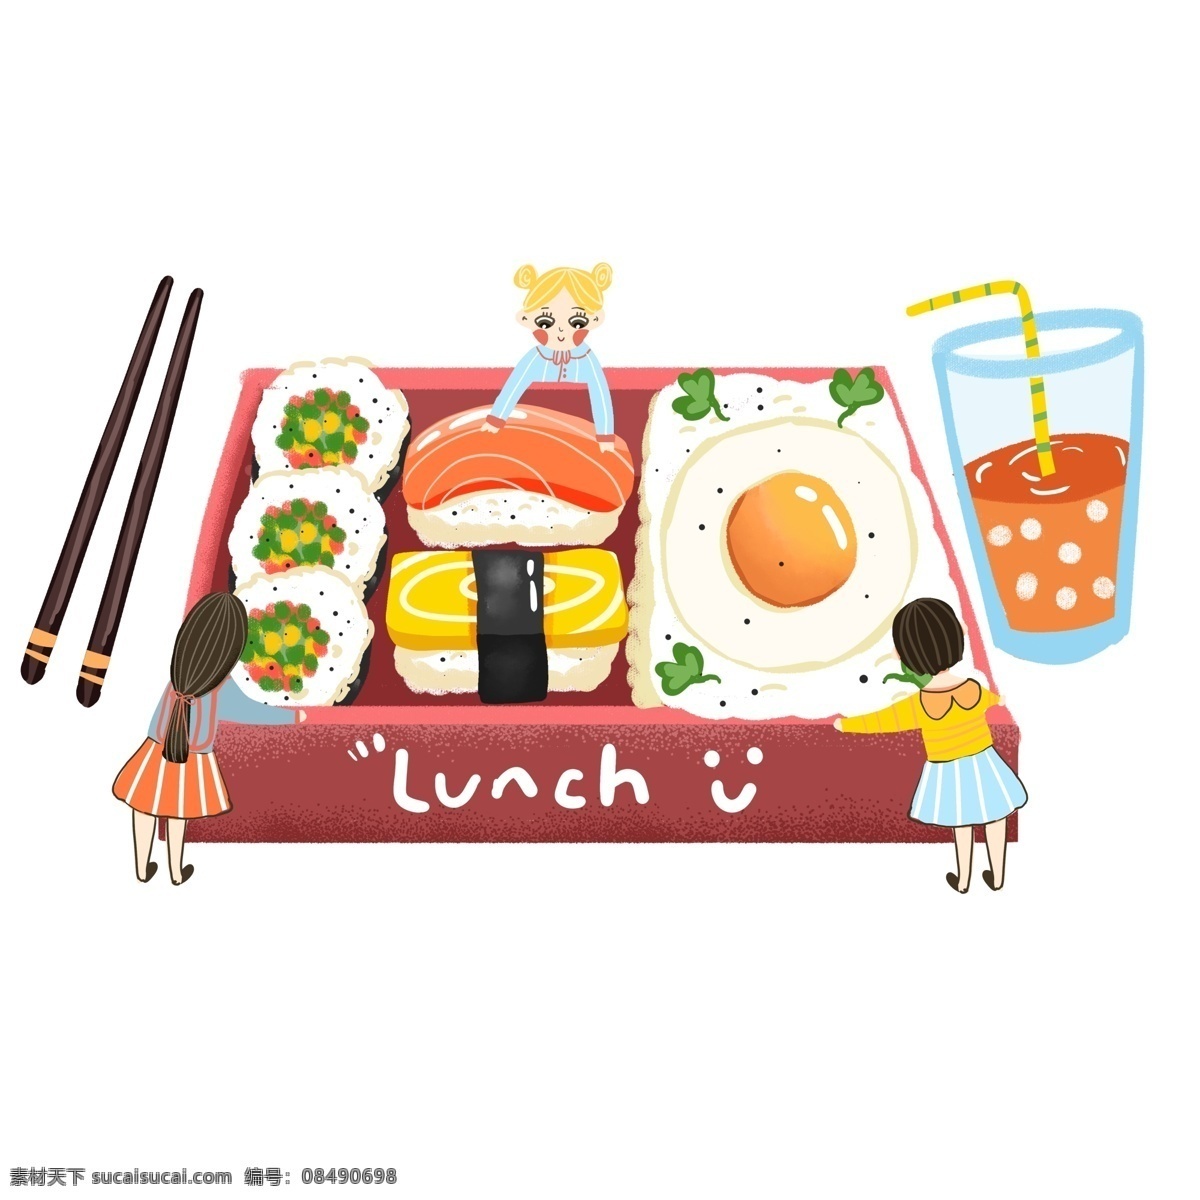 彩绘 美食 午餐 寿司 元素 卡通 果汁 女孩 手绘 日本食物 橙子 筷子 美食大作战